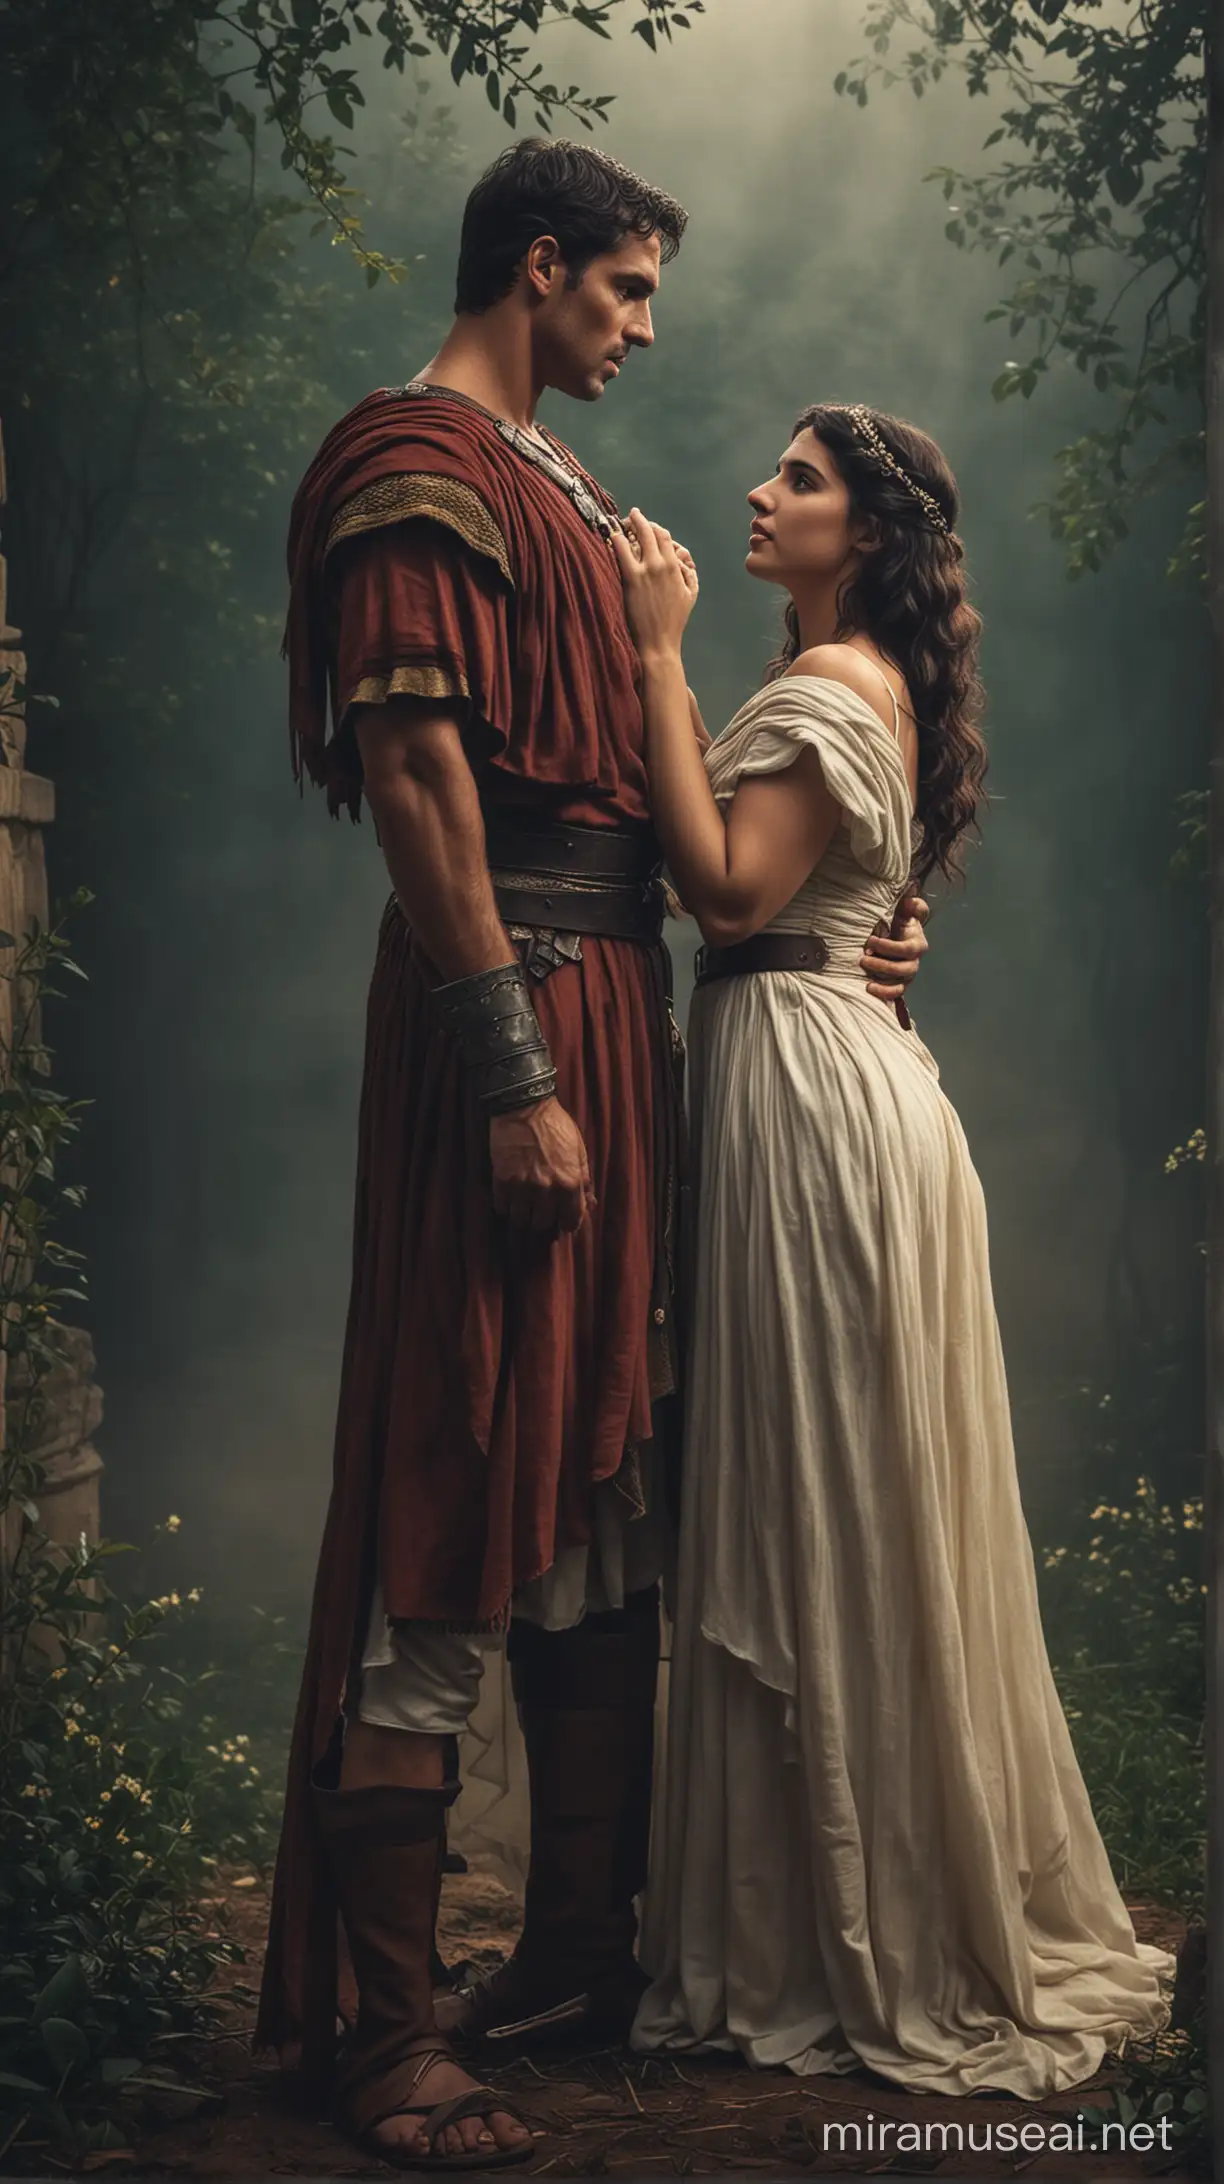 Romantic Portrayal of Mark Antony and Octavia in Moody Ambiance